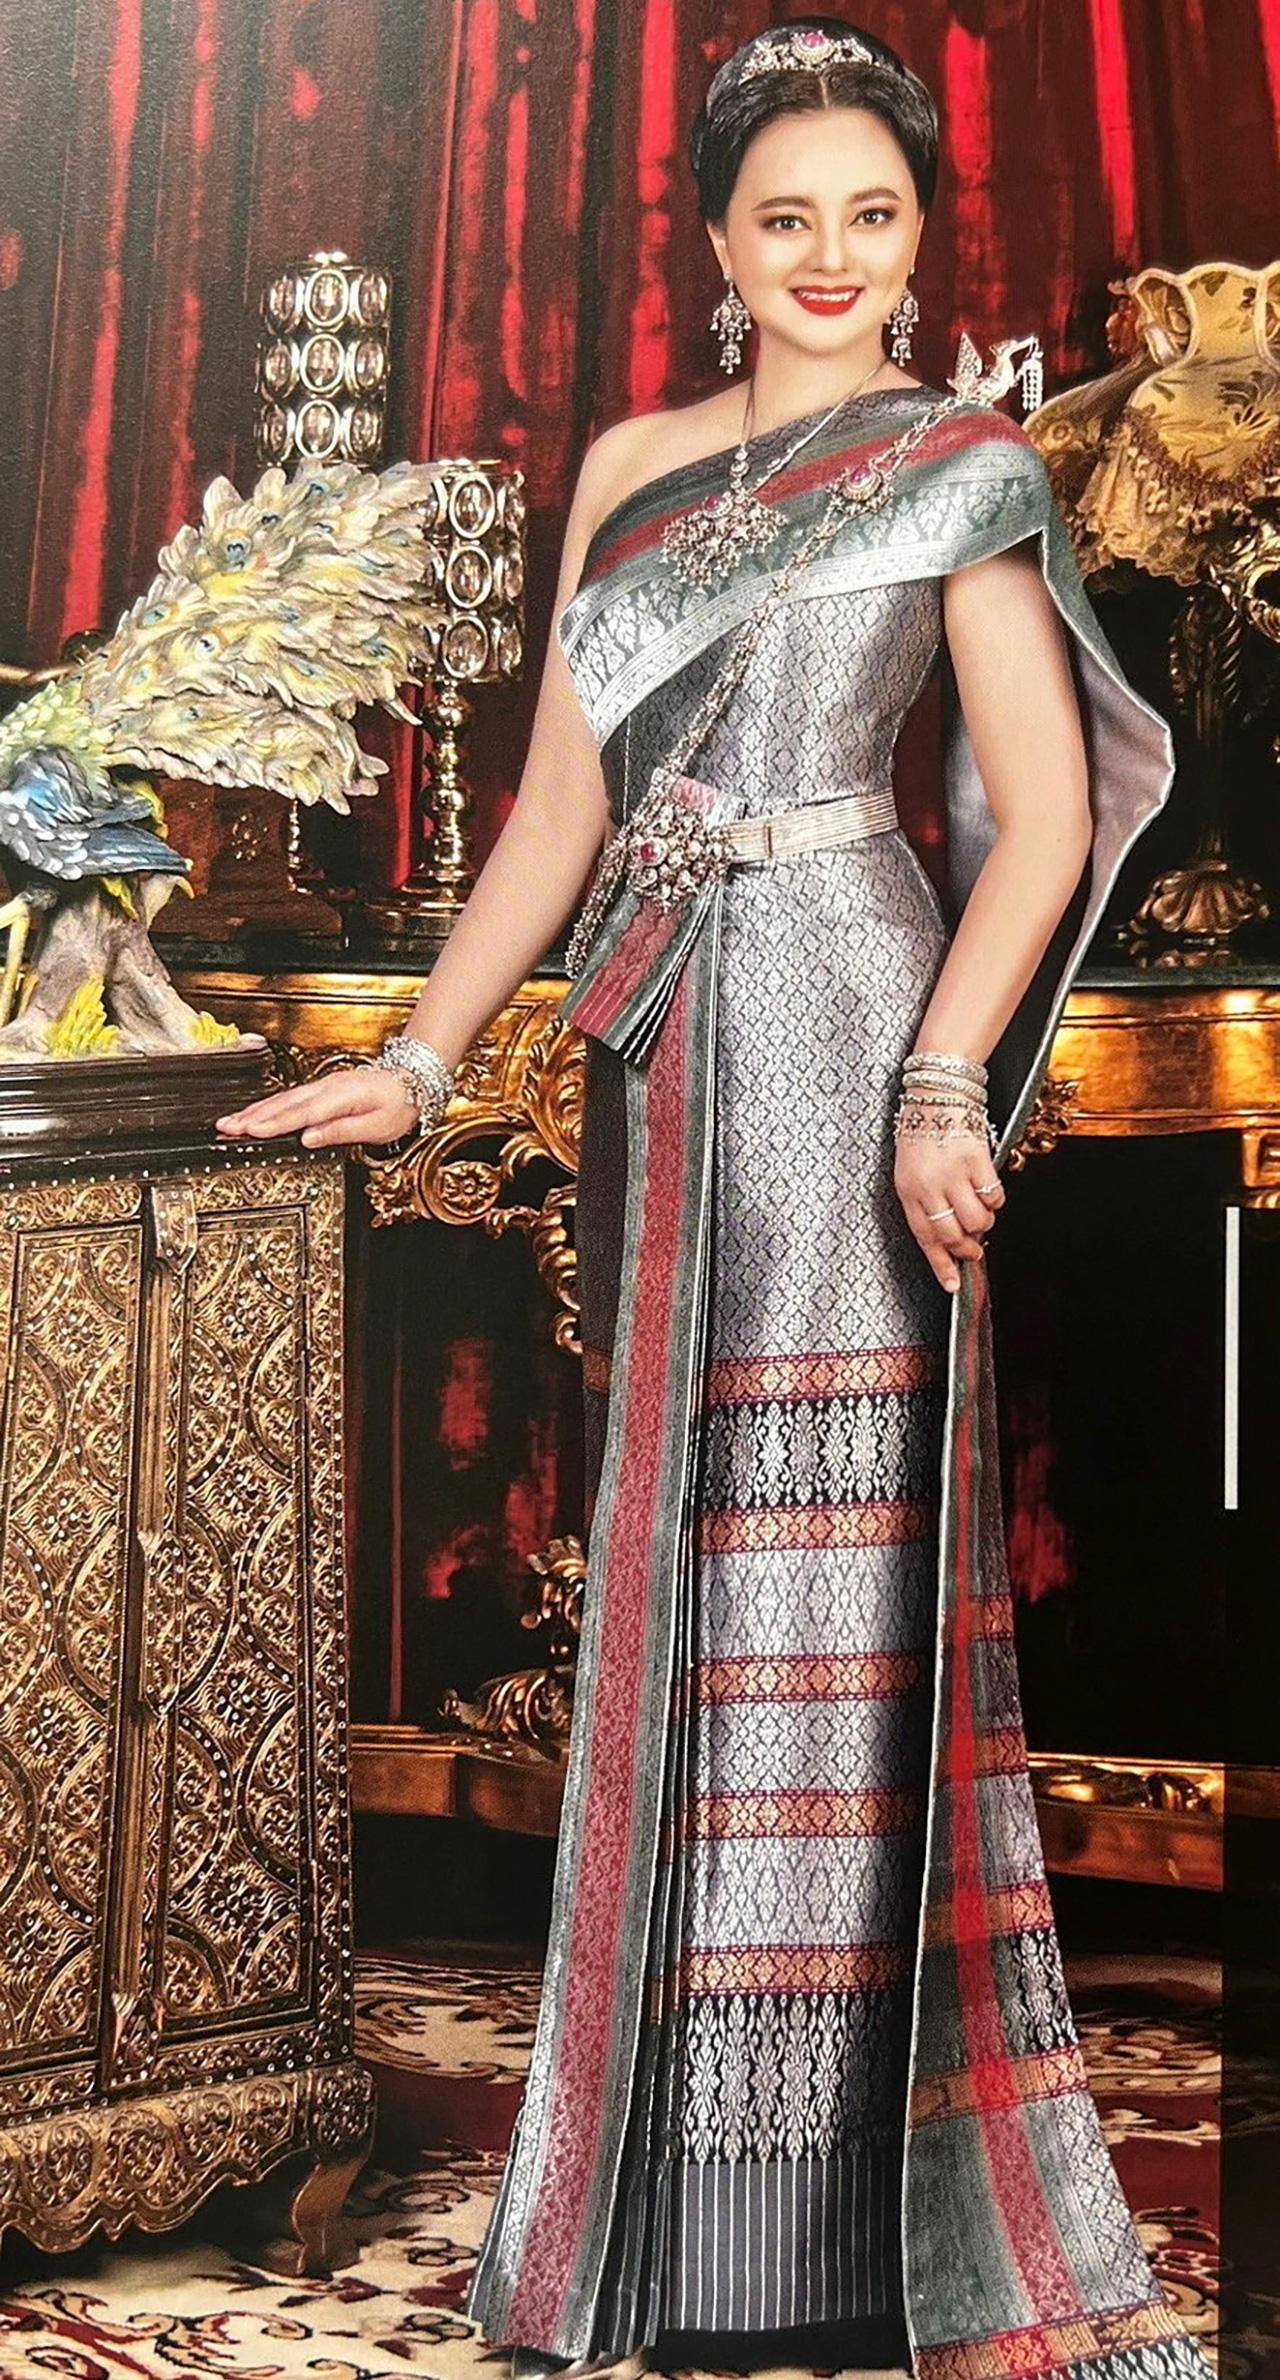 《暹罗布料服装》一书广受好评，展现传统泰服别致的美丽！